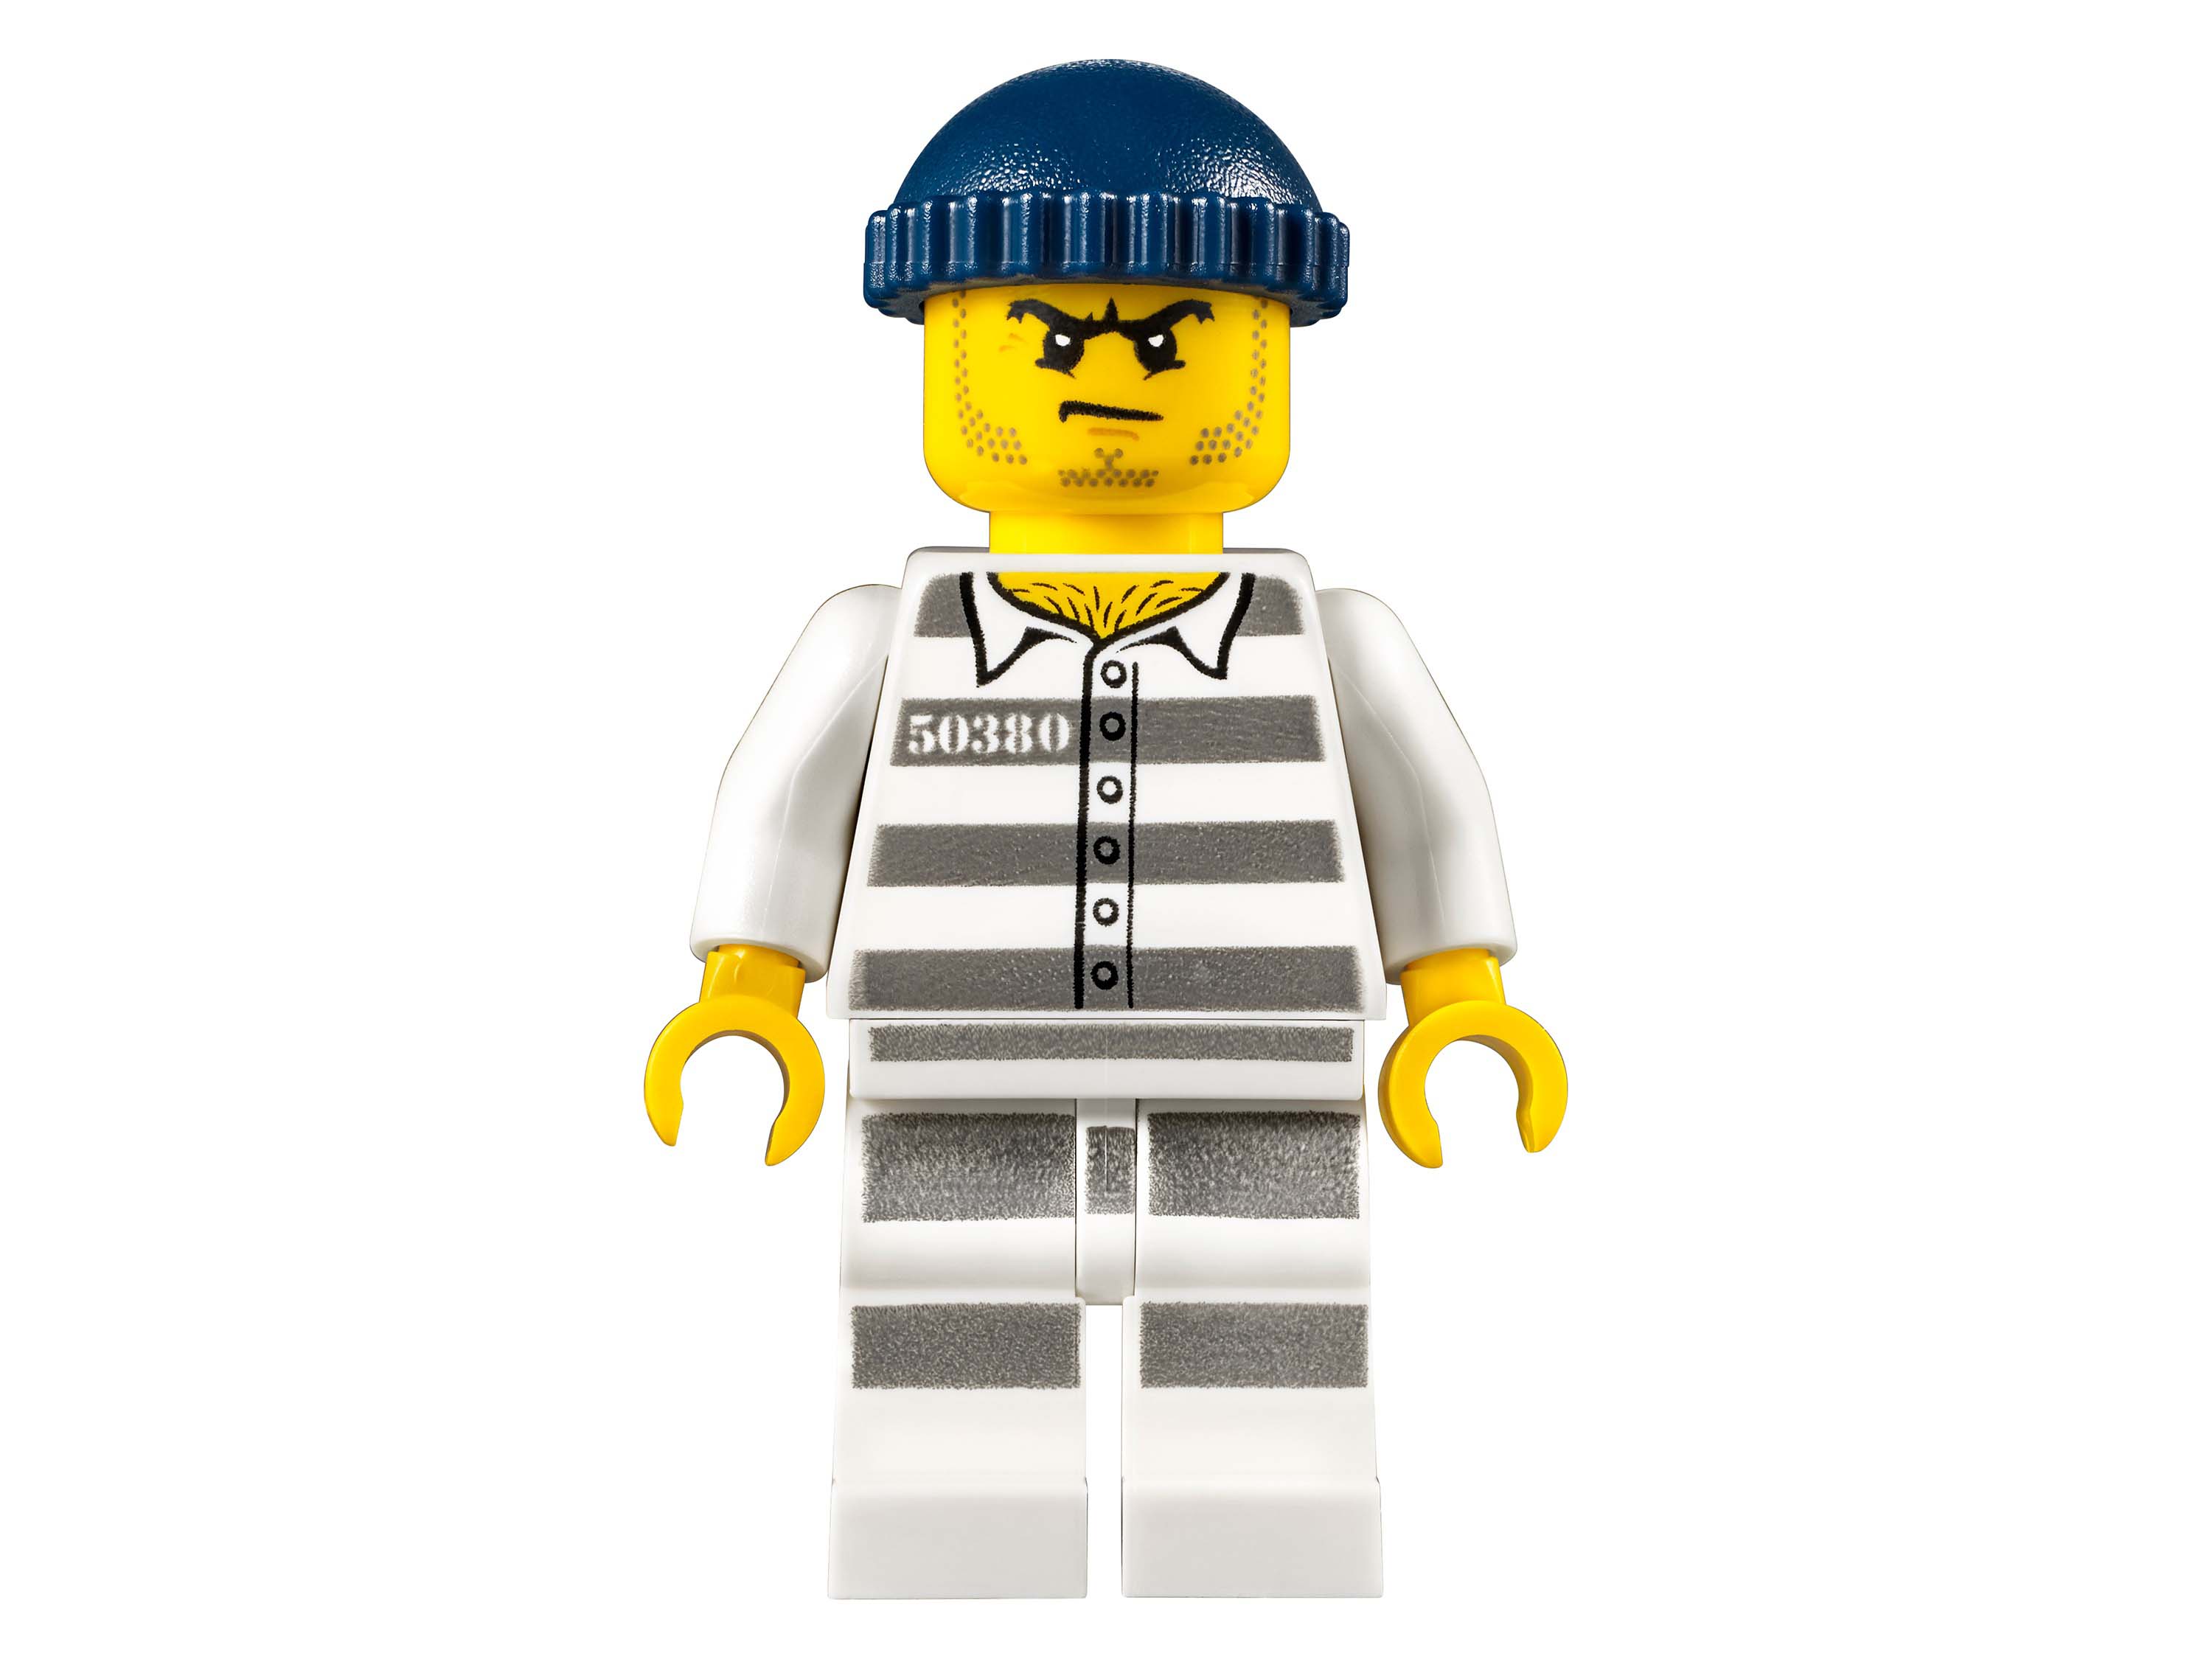 Конструктор Lego City Police - Полицейский участок  